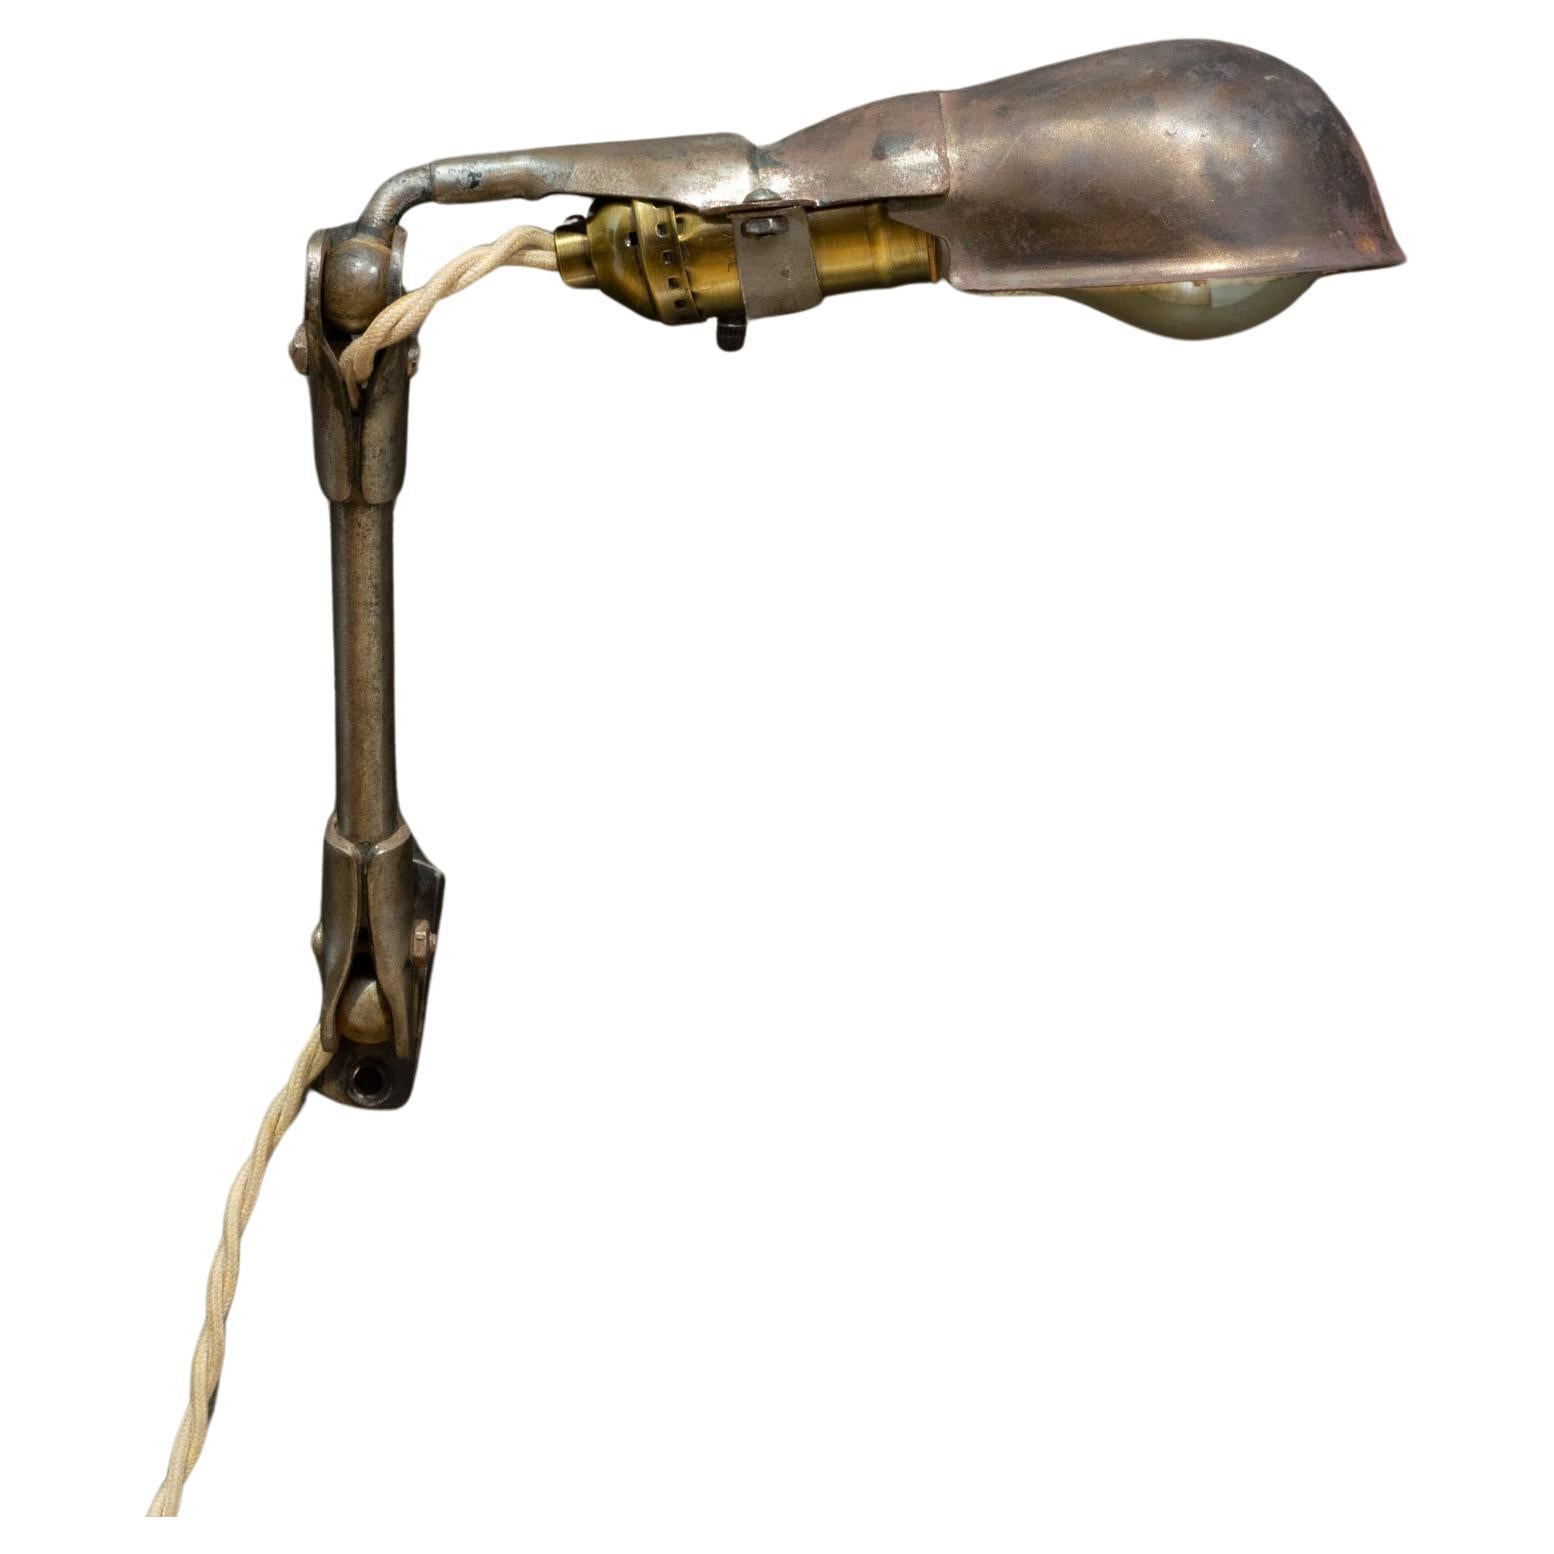 Industrielle Vintage-Lampe mit Gelenk, beweglich, ca. 1930 (FREE SHIPPING)